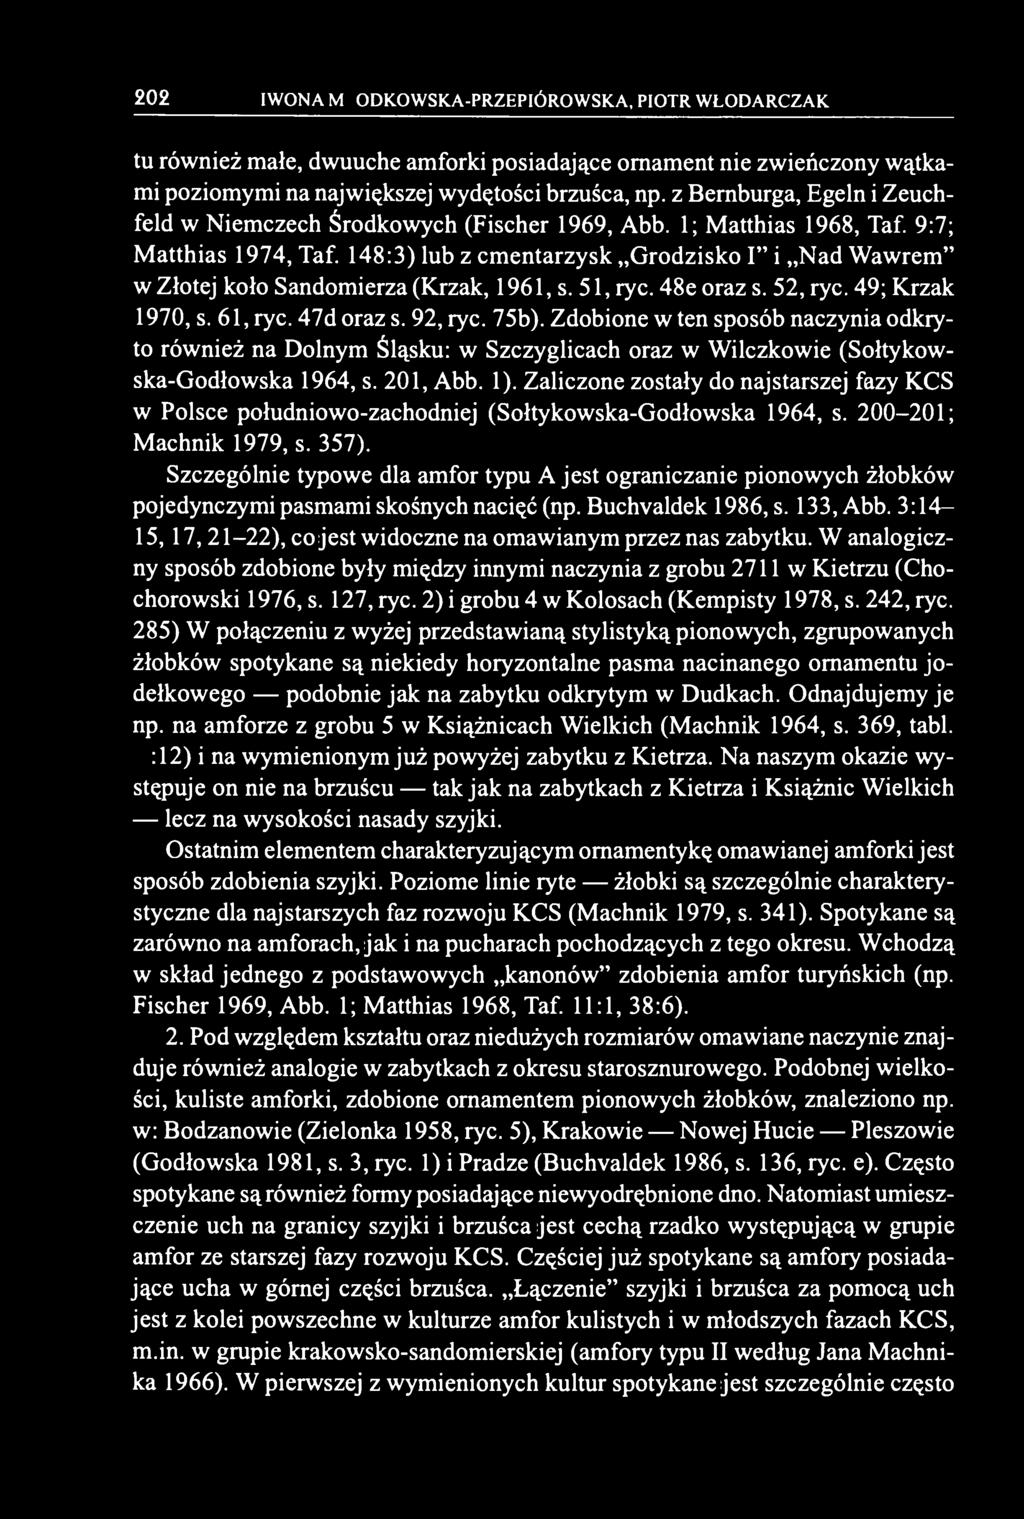 Zaliczone zostały do najstarszej fazy KCS w Polsce południowo-zachodniej (Sołtykowska-Godłowska 1964, s. 200-201; Machnik 1979, s. 357).